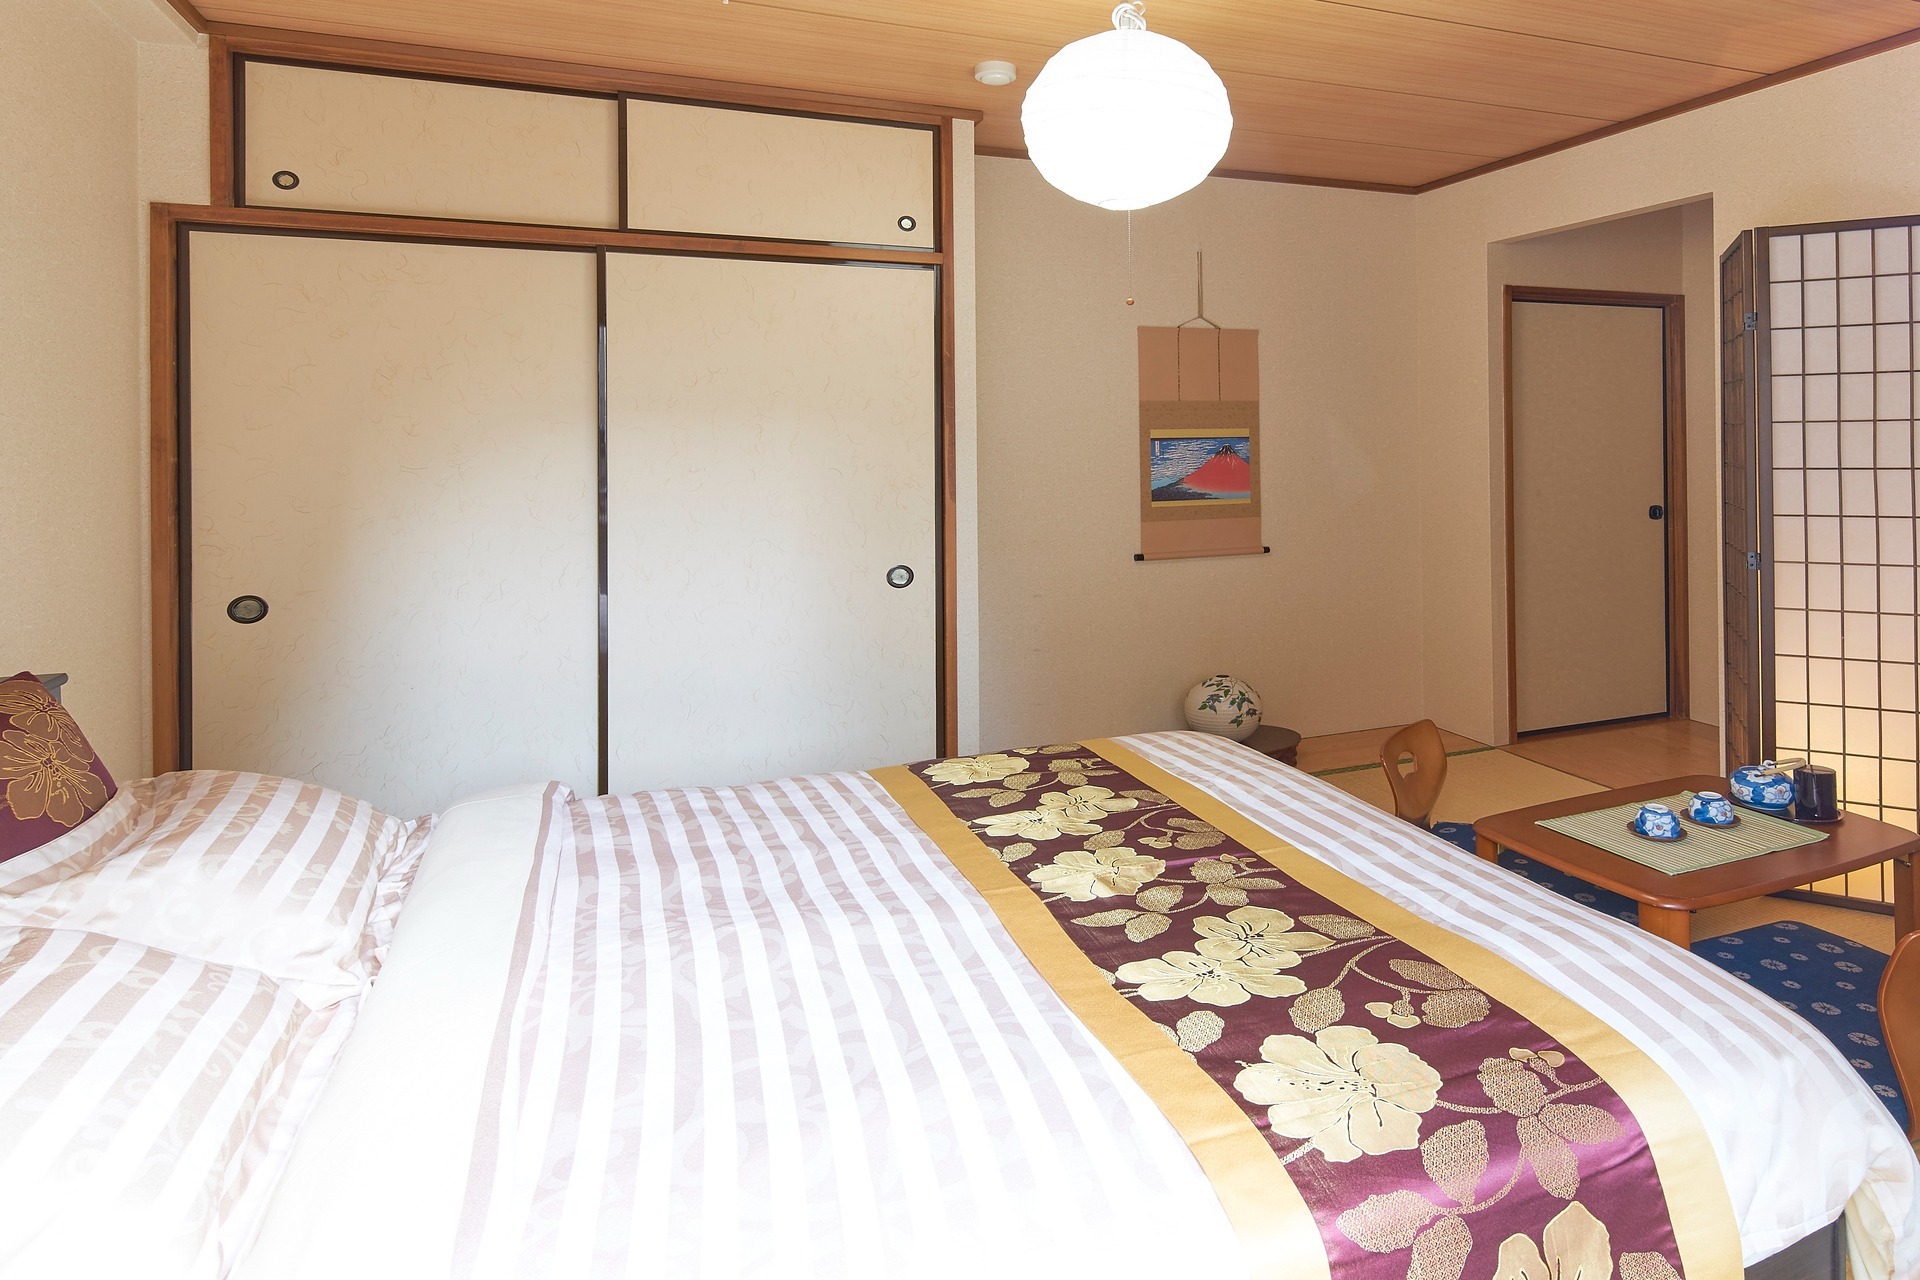 広い! 140cmダブル洋室+140cmダブル和室+DK+バス・トイレ別! 生活便利!WiFi無制限